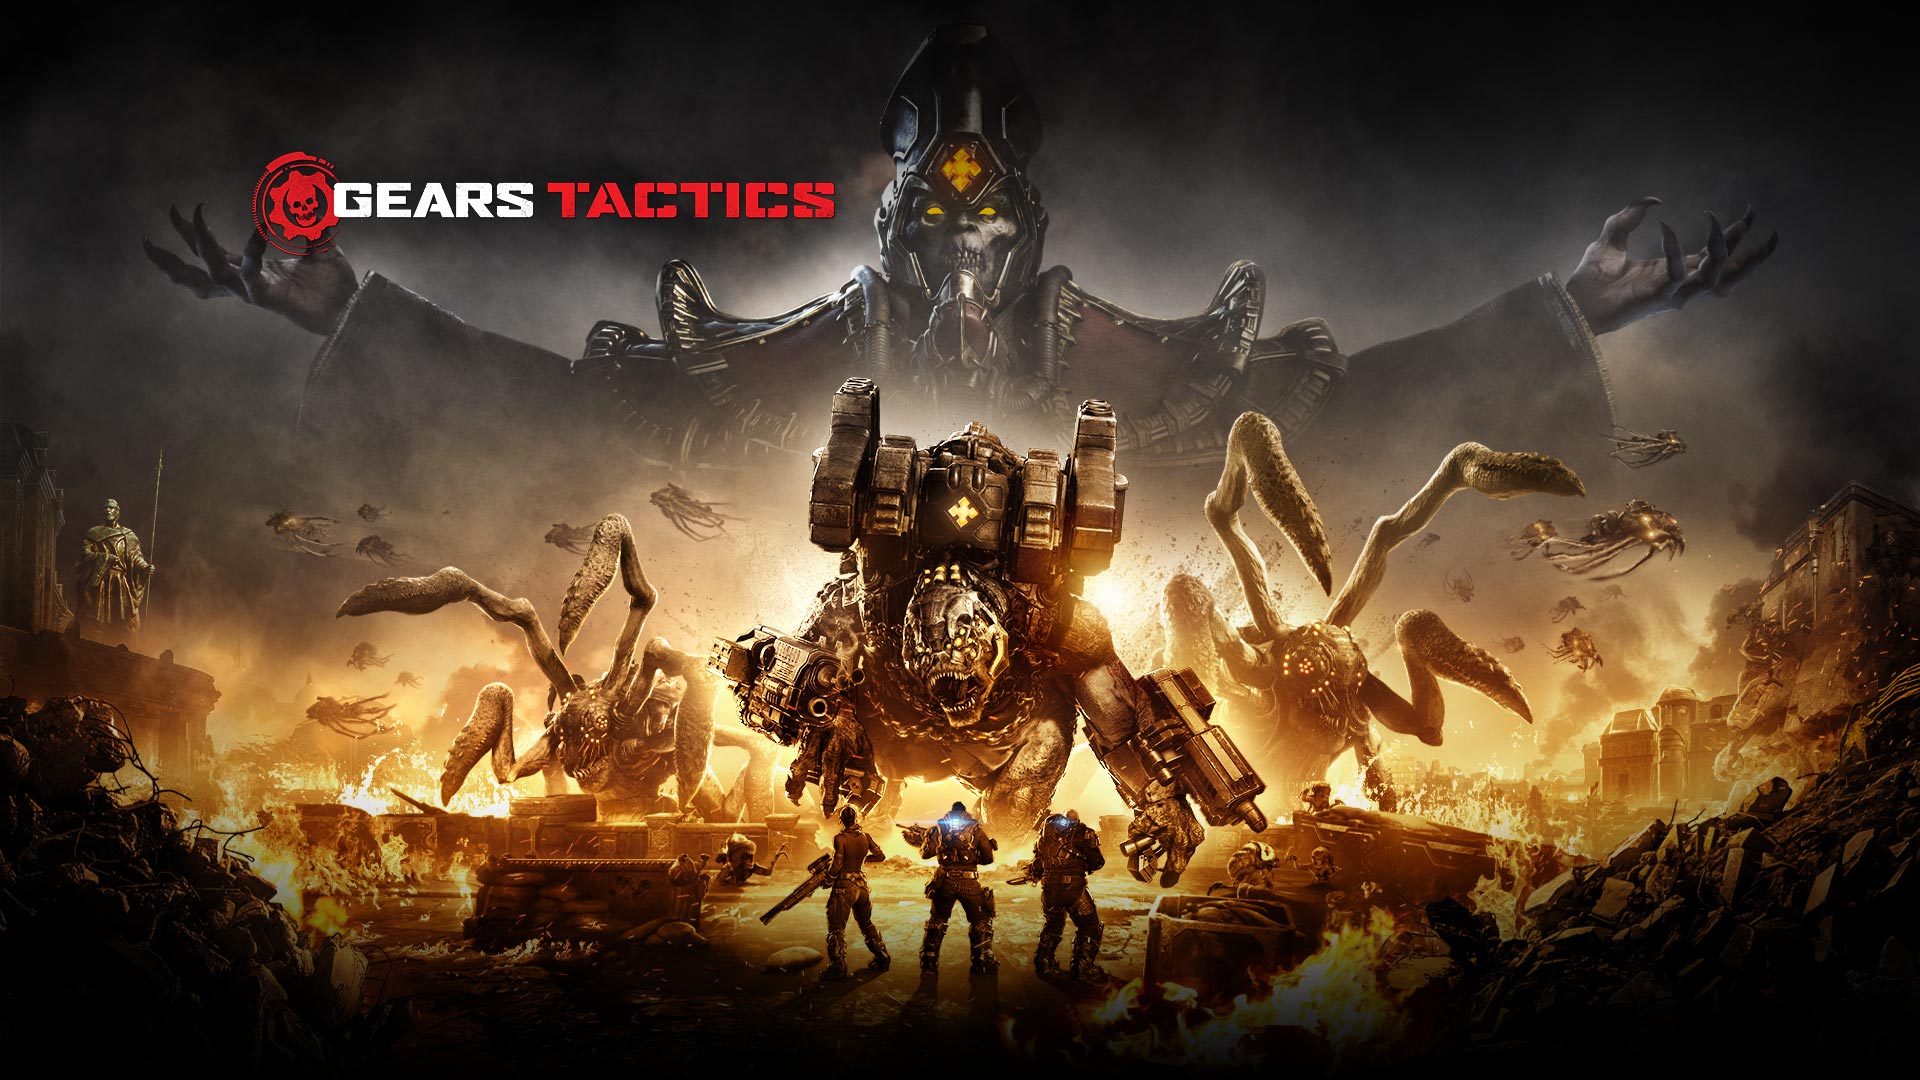 Логотип игры Gears Tactics, охваченная огнем сцена из игры, в которой три персонажа собираются вступить в бой с несколькими крупными монстрами